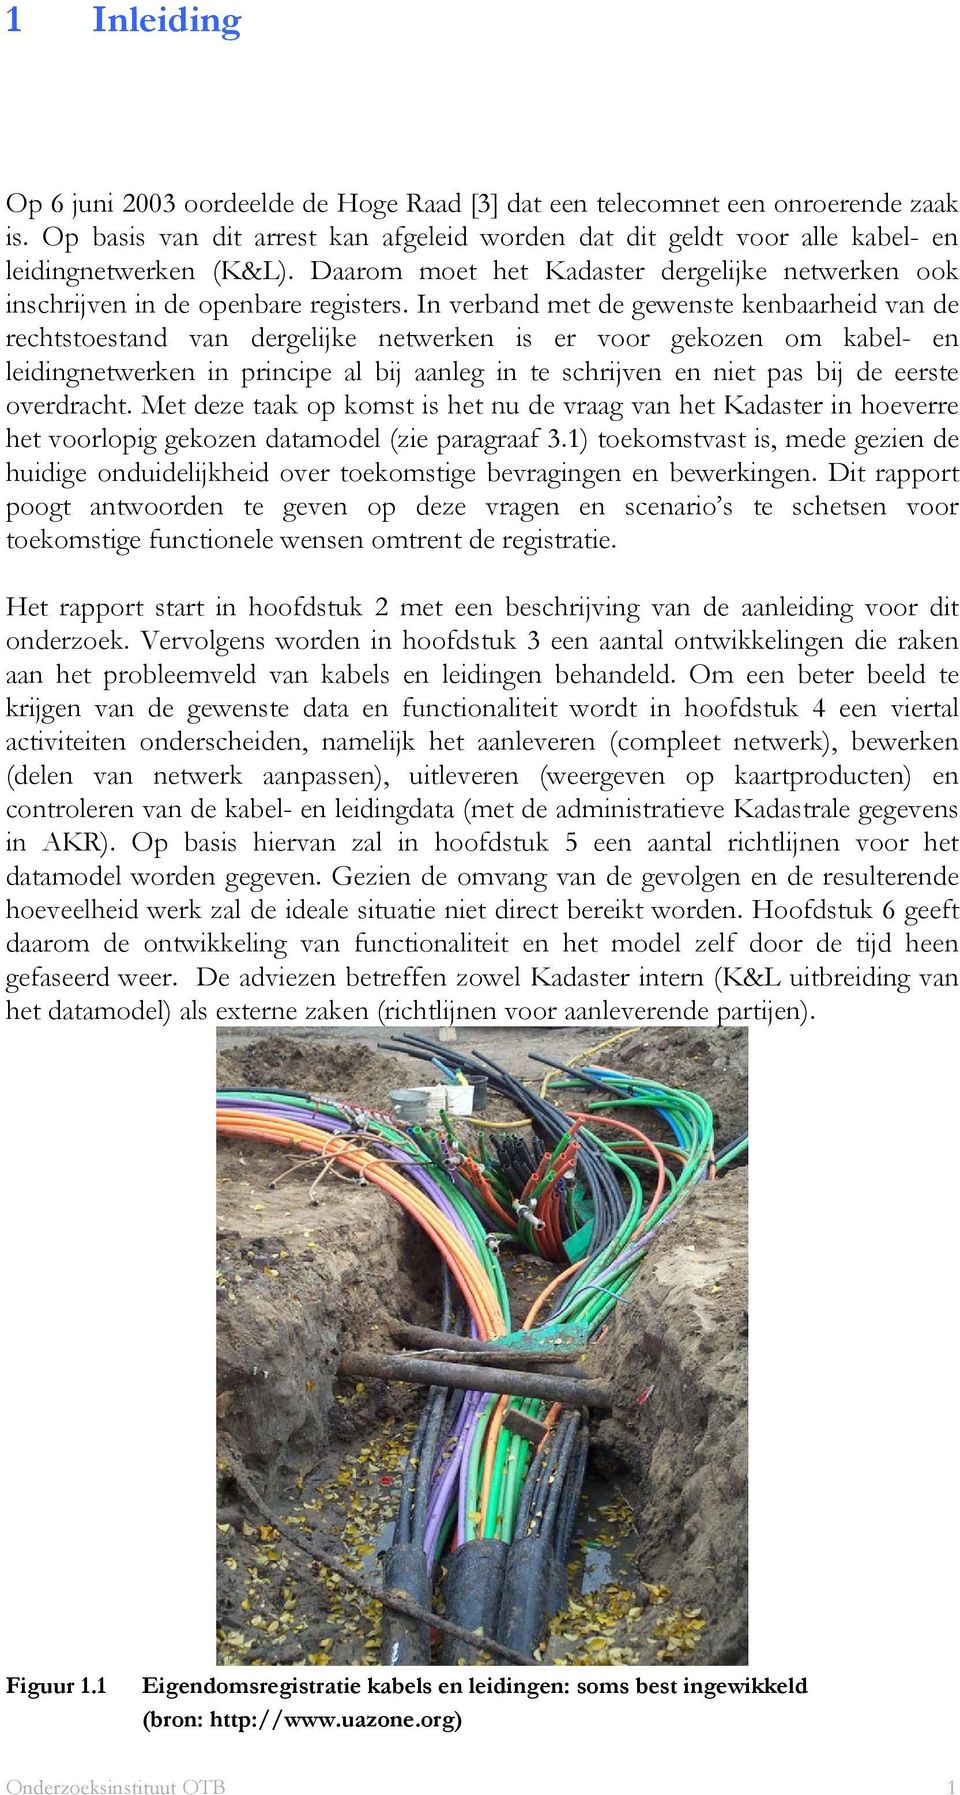 In verband met de gewenste kenbaarheid van de rechtstoestand van dergelijke netwerken is er voor gekozen om kabel- en leidingnetwerken in principe al bij aanleg in te schrijven en niet pas bij de